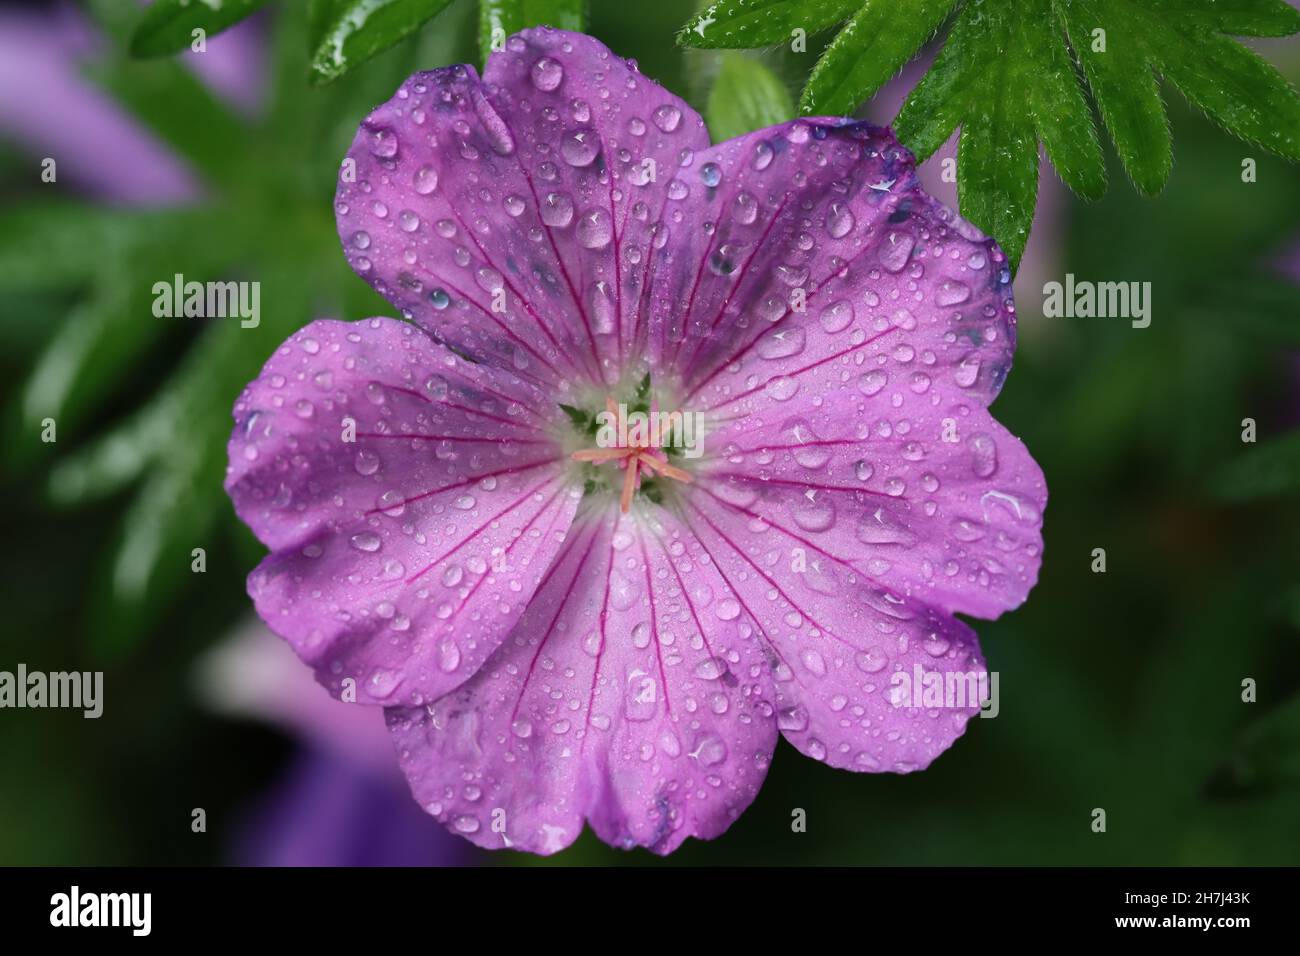 primo piano di un fiore di geranio con molte piccole gocce sui petali rosa, vista diretta nel fiore Foto Stock